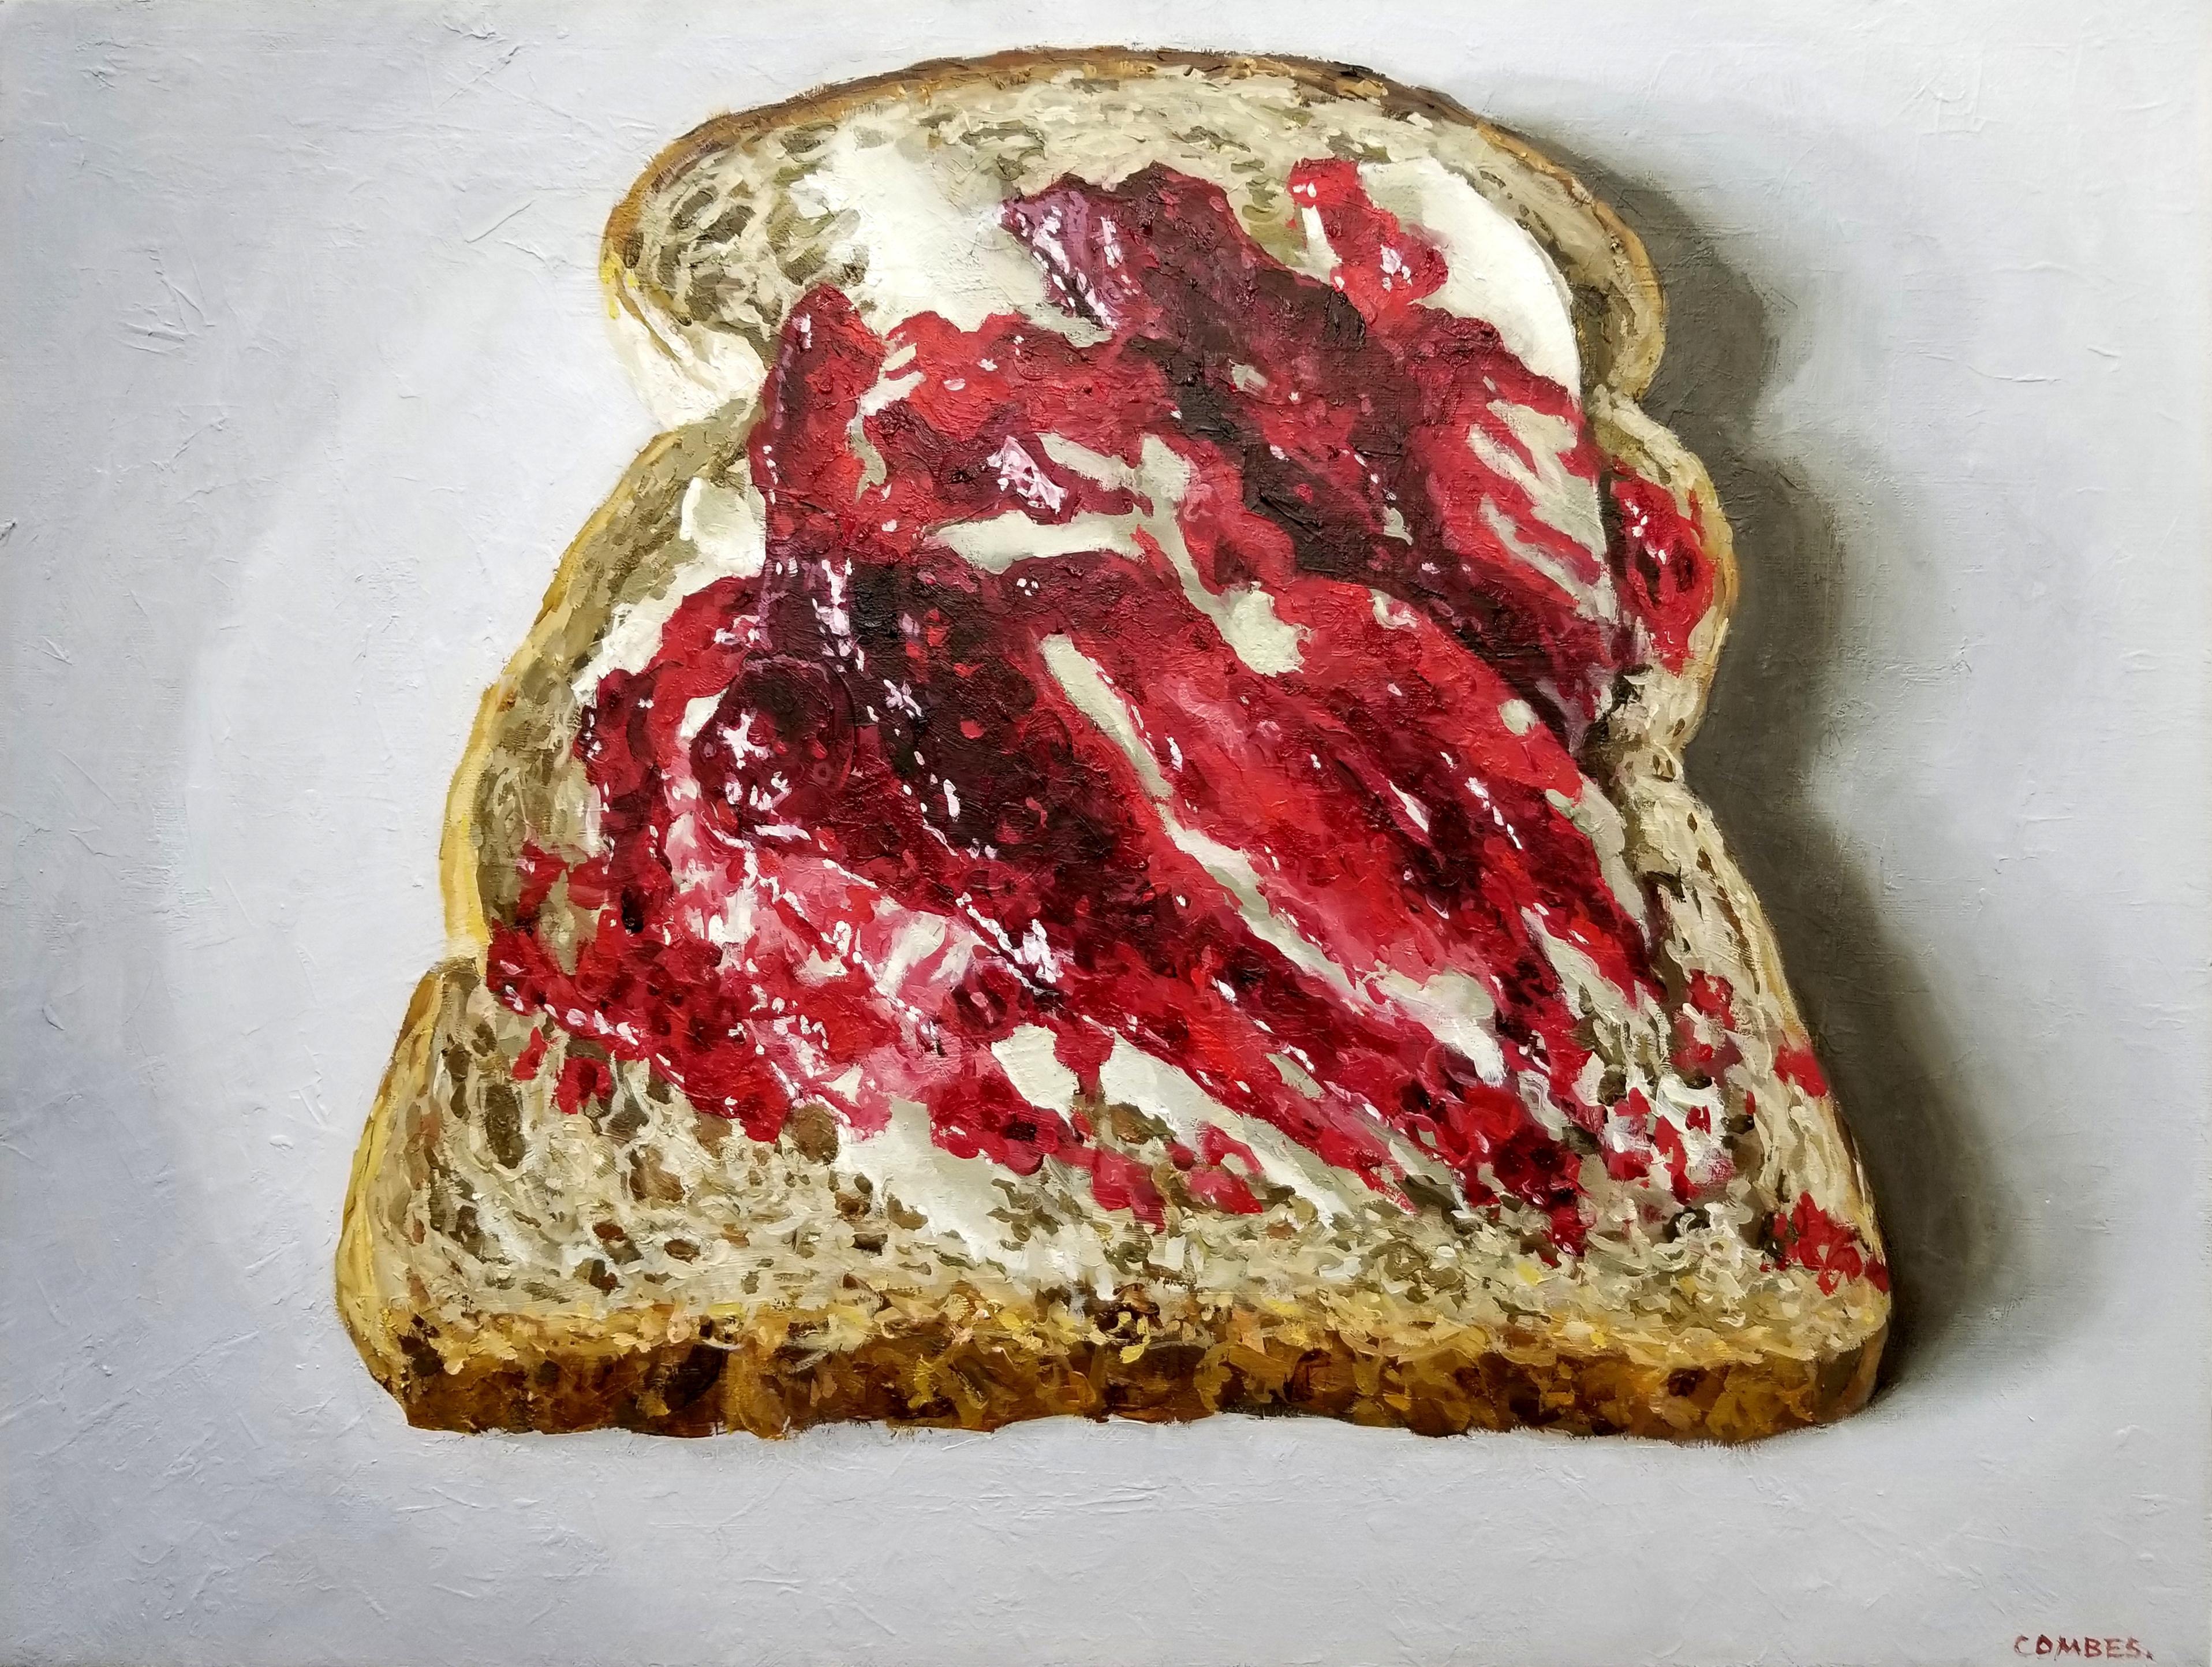 Still-Life Painting Richard Combes - CONFITURE SUR PAIN - Nature morte alimentaire / Pop Art / Photorealism / Cuisine